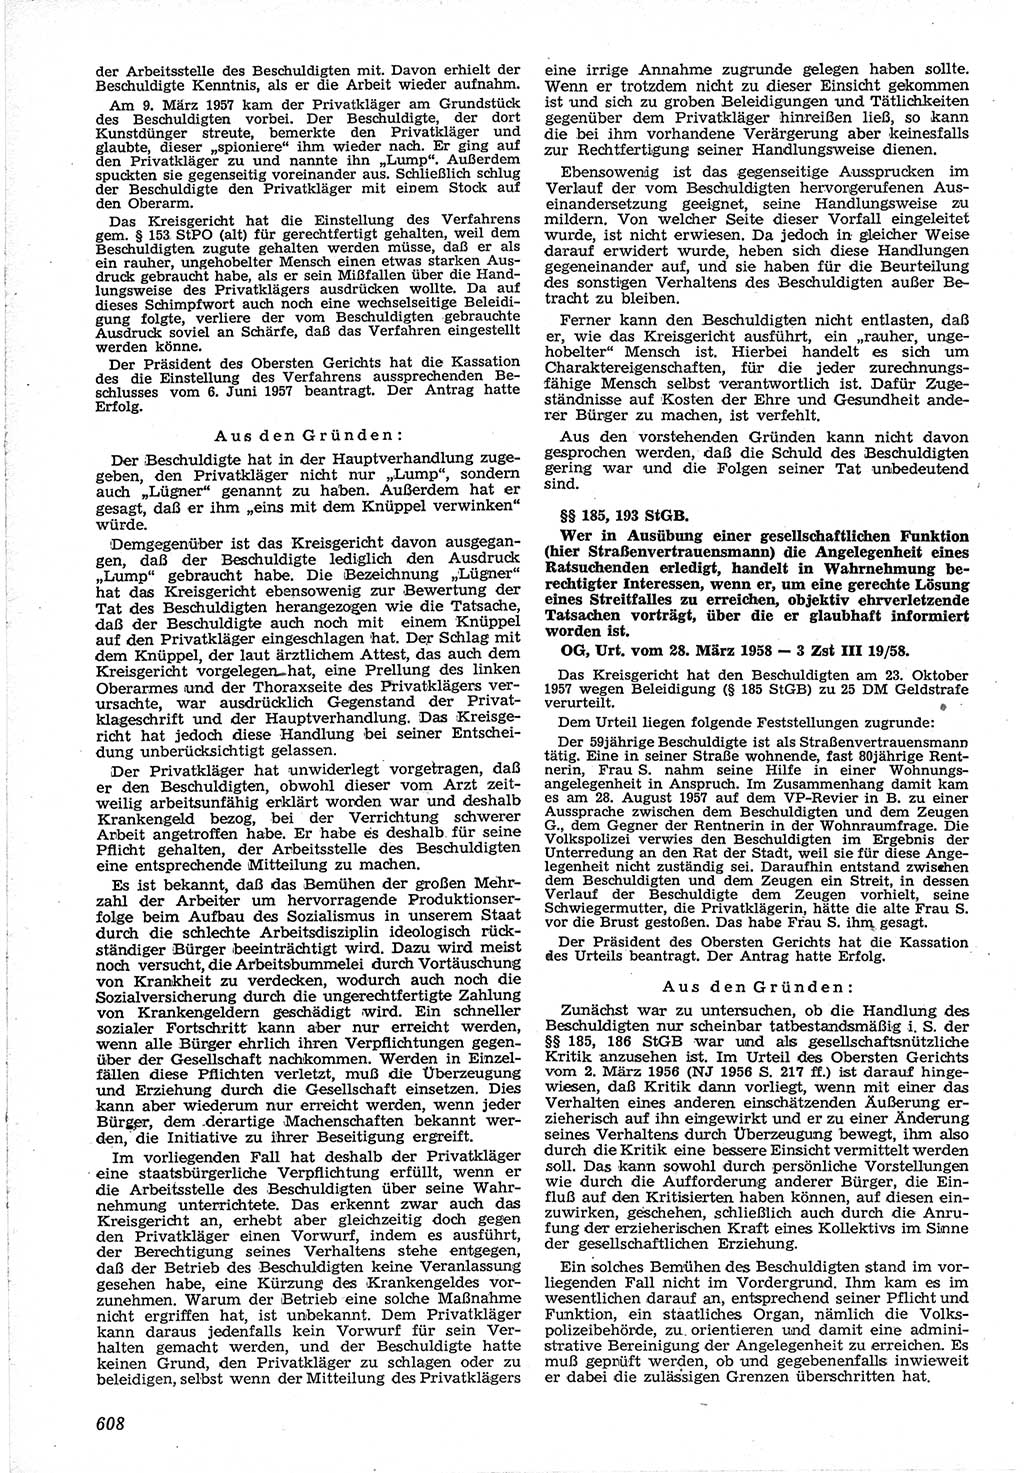 Neue Justiz (NJ), Zeitschrift für Recht und Rechtswissenschaft [Deutsche Demokratische Republik (DDR)], 12. Jahrgang 1958, Seite 608 (NJ DDR 1958, S. 608)